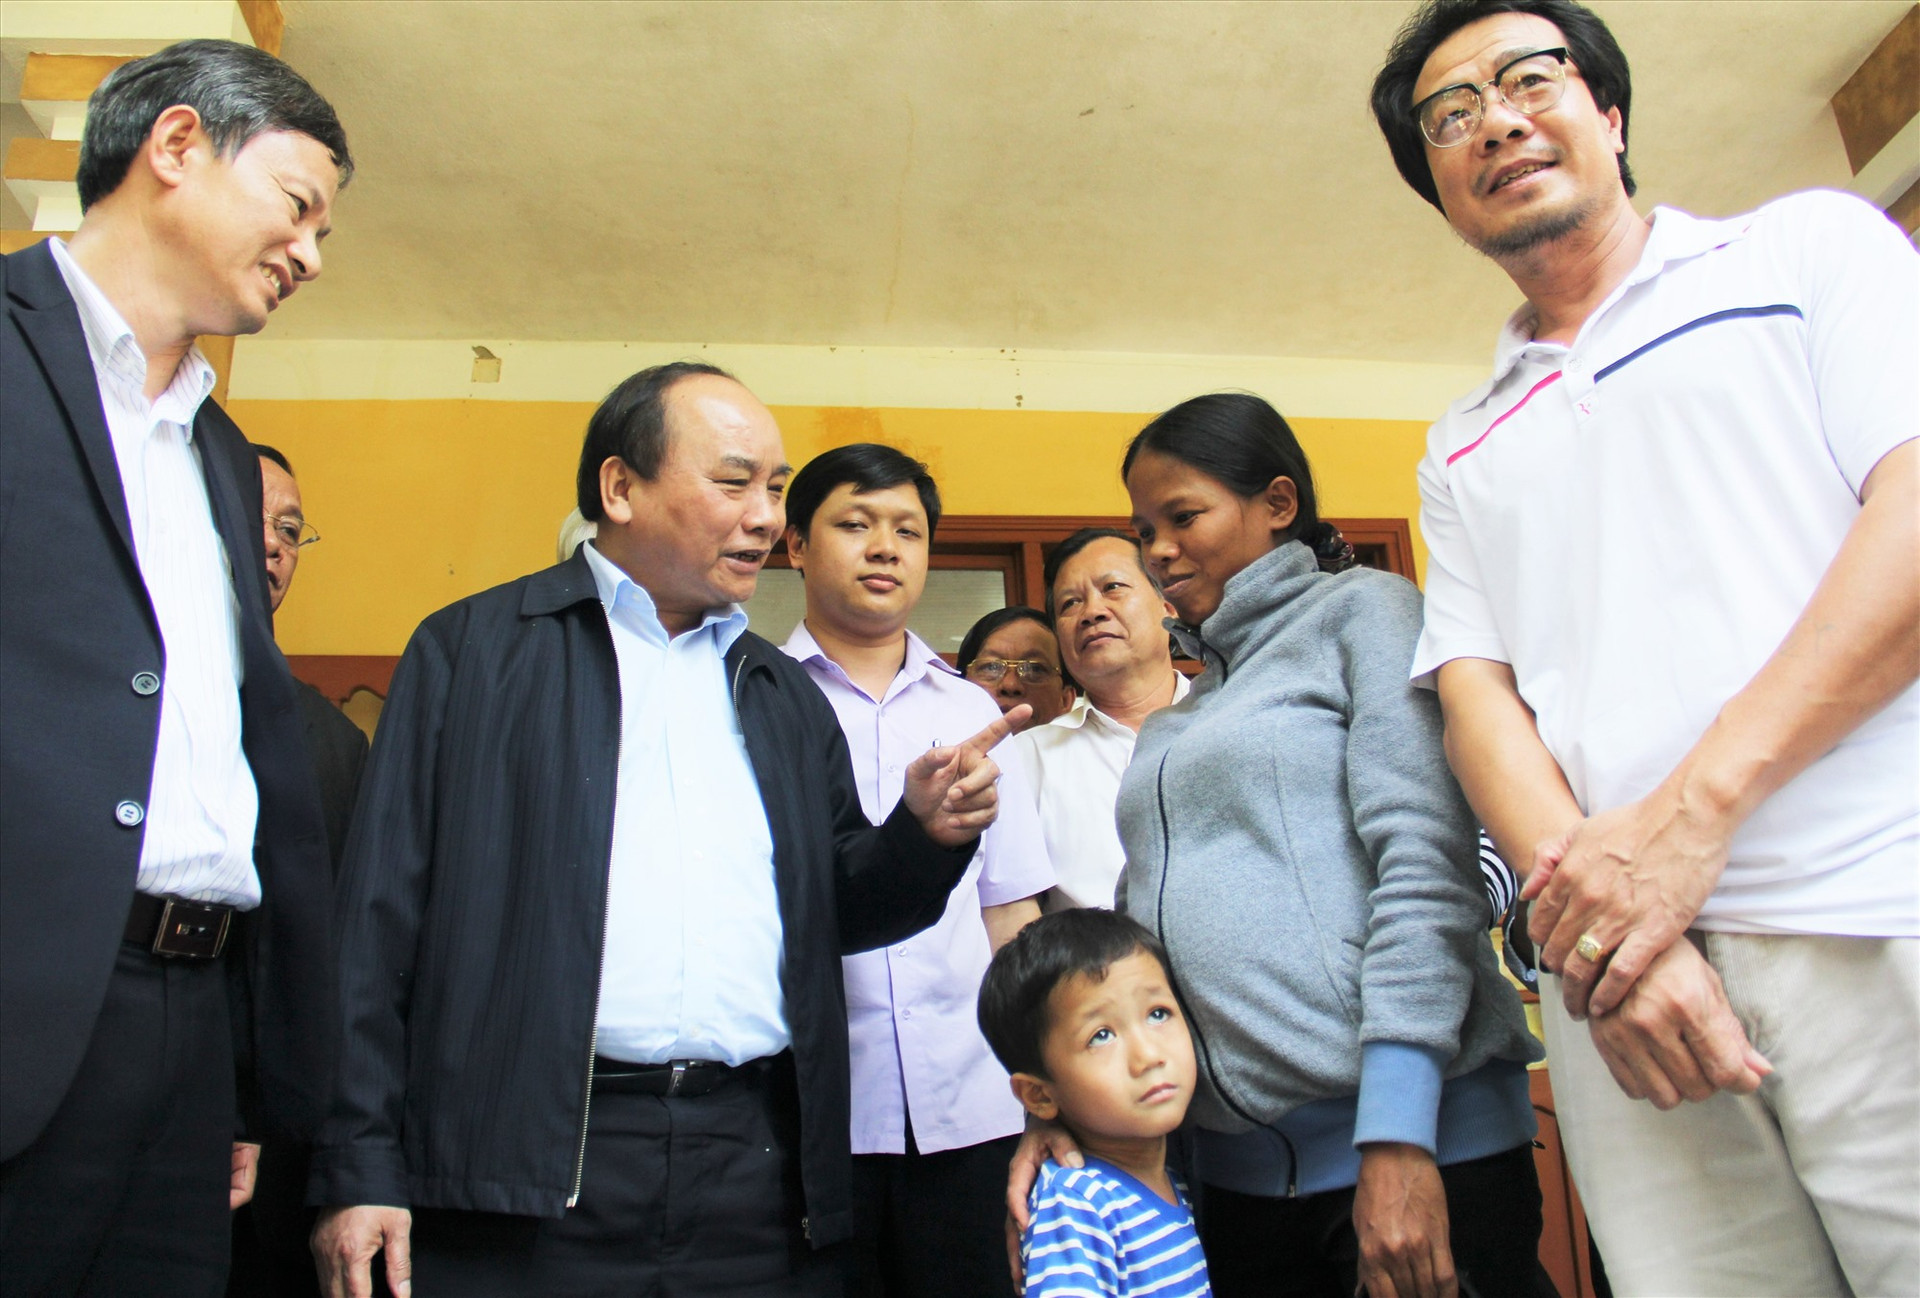 Chị Hồ Thị Hiếu nhận lời động viên của đồng chí Nguyễn Xuân Phúc, vào tháng 3.2016, lúc bấy giờ là Phó Thủ tướng Chính phủ. Ảnh: ALĂNG NGƯỚC